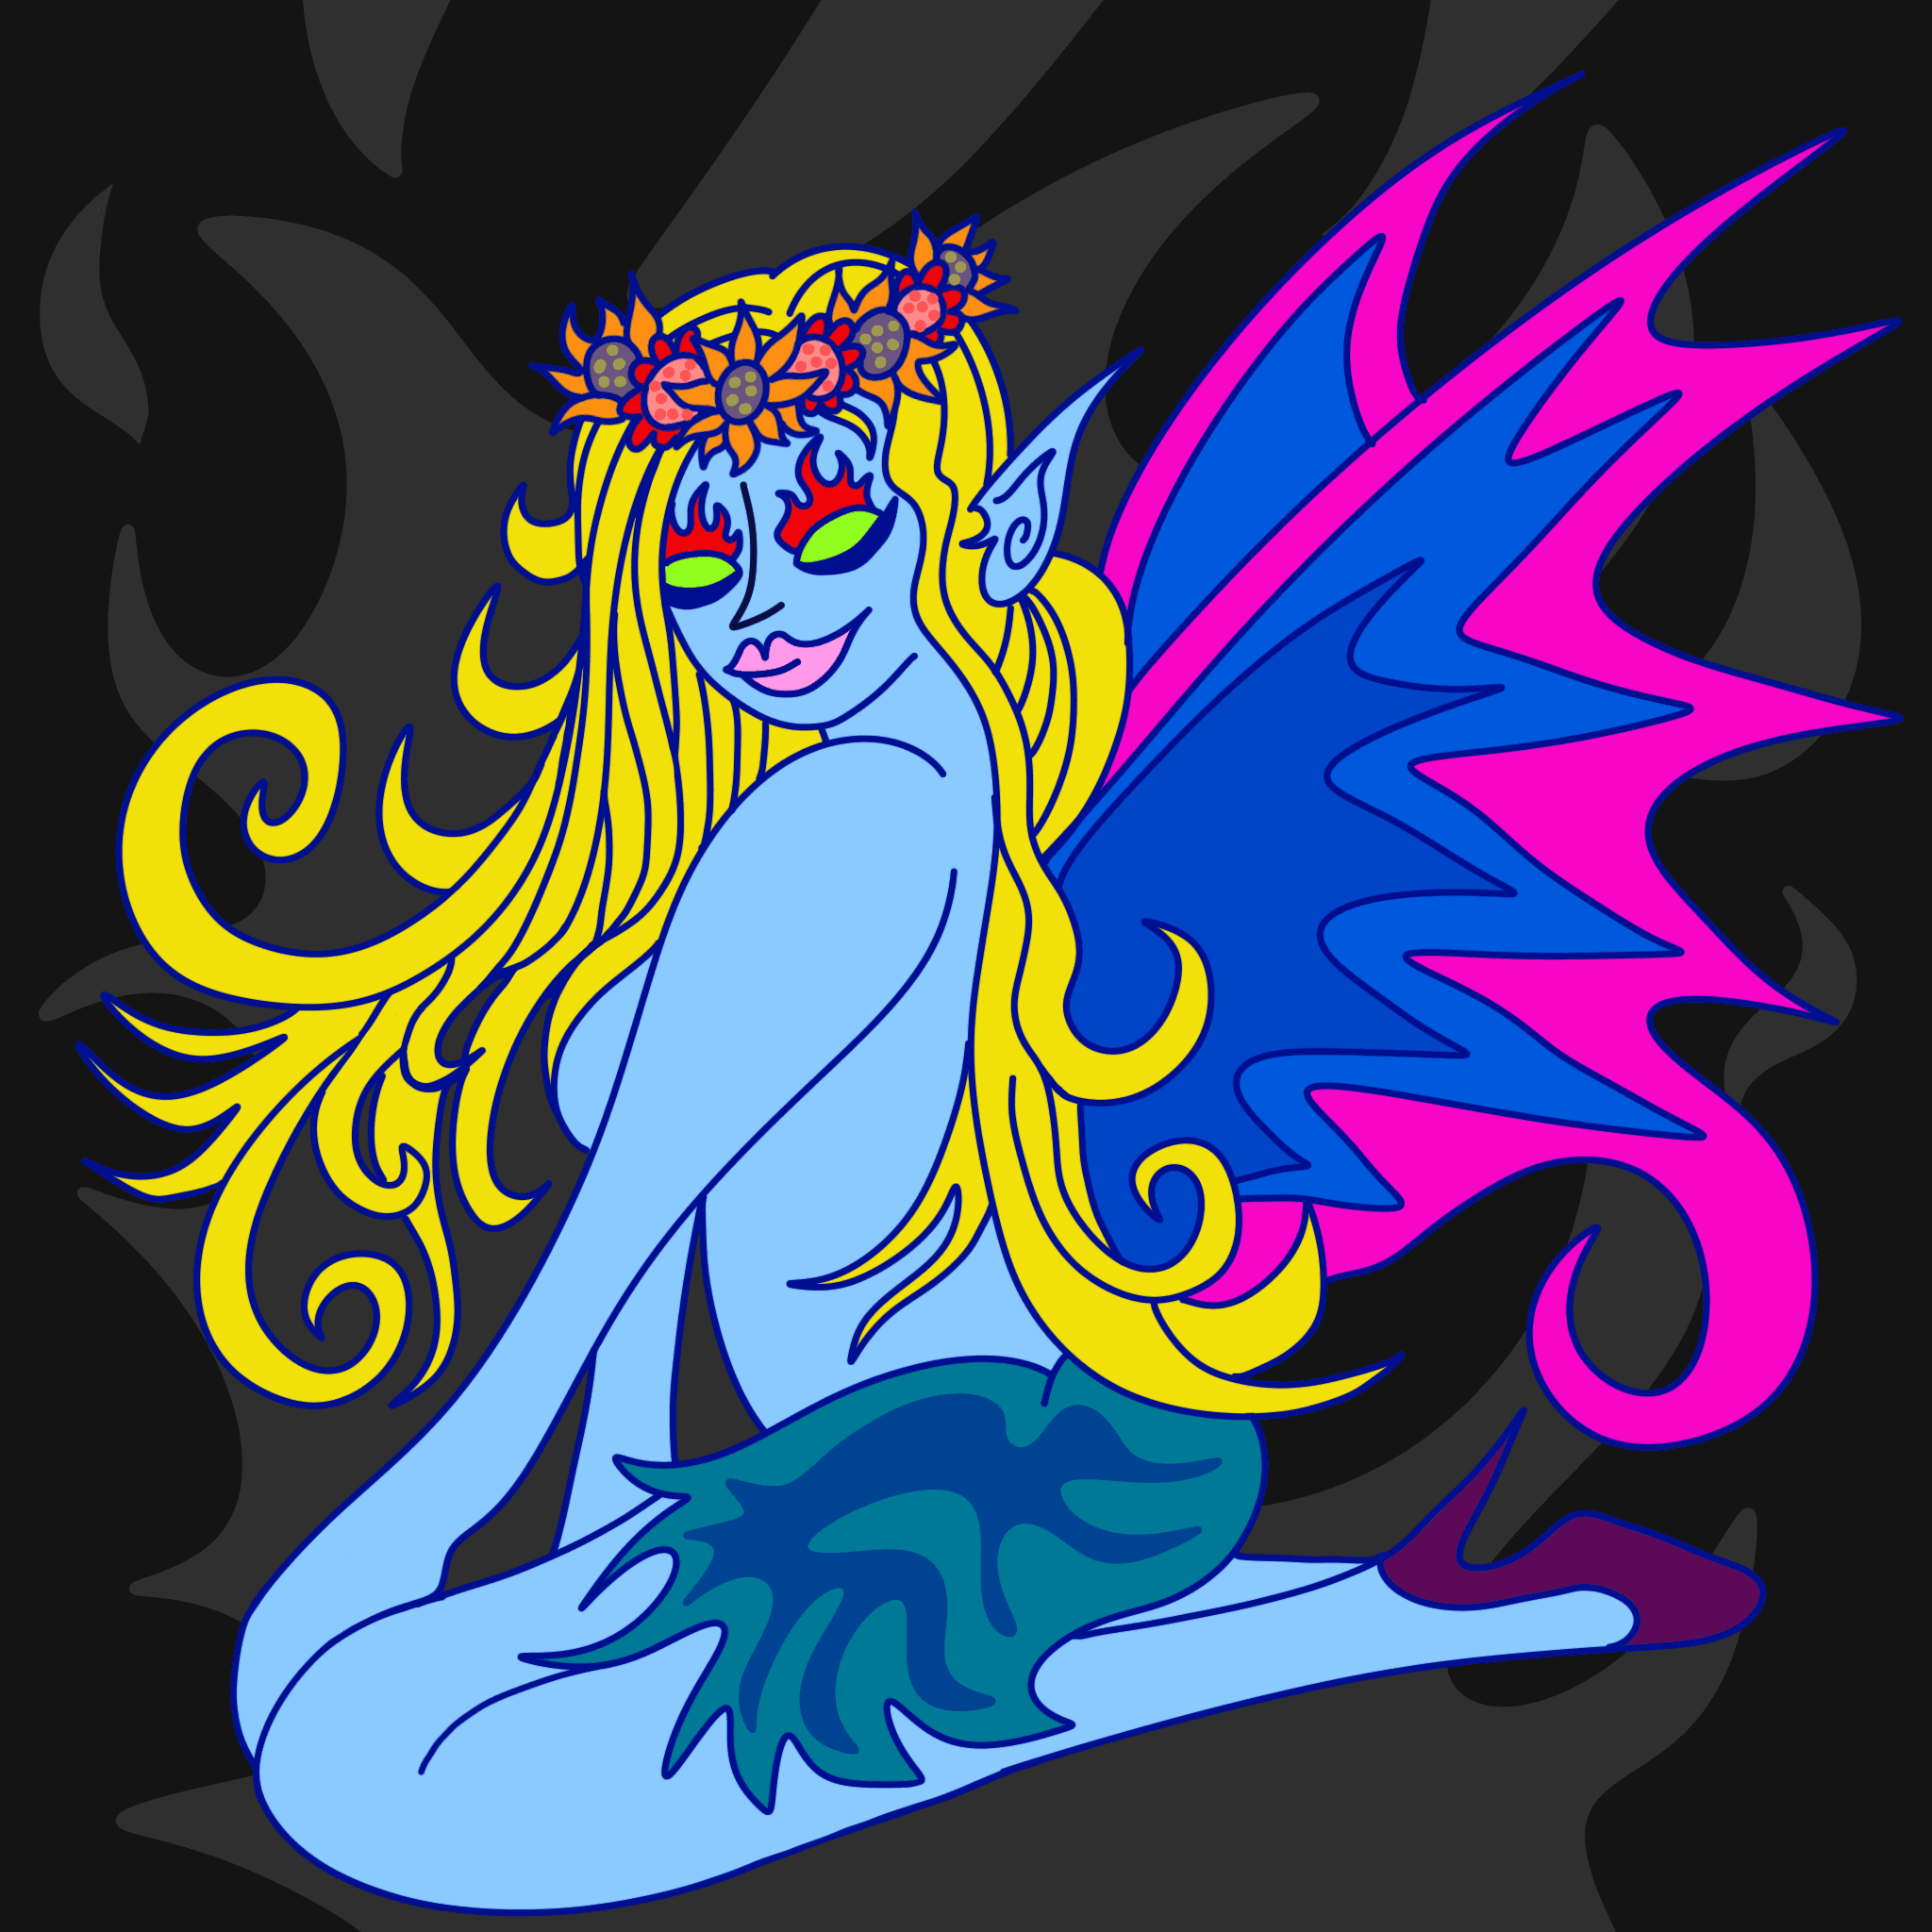 Blue Fairy